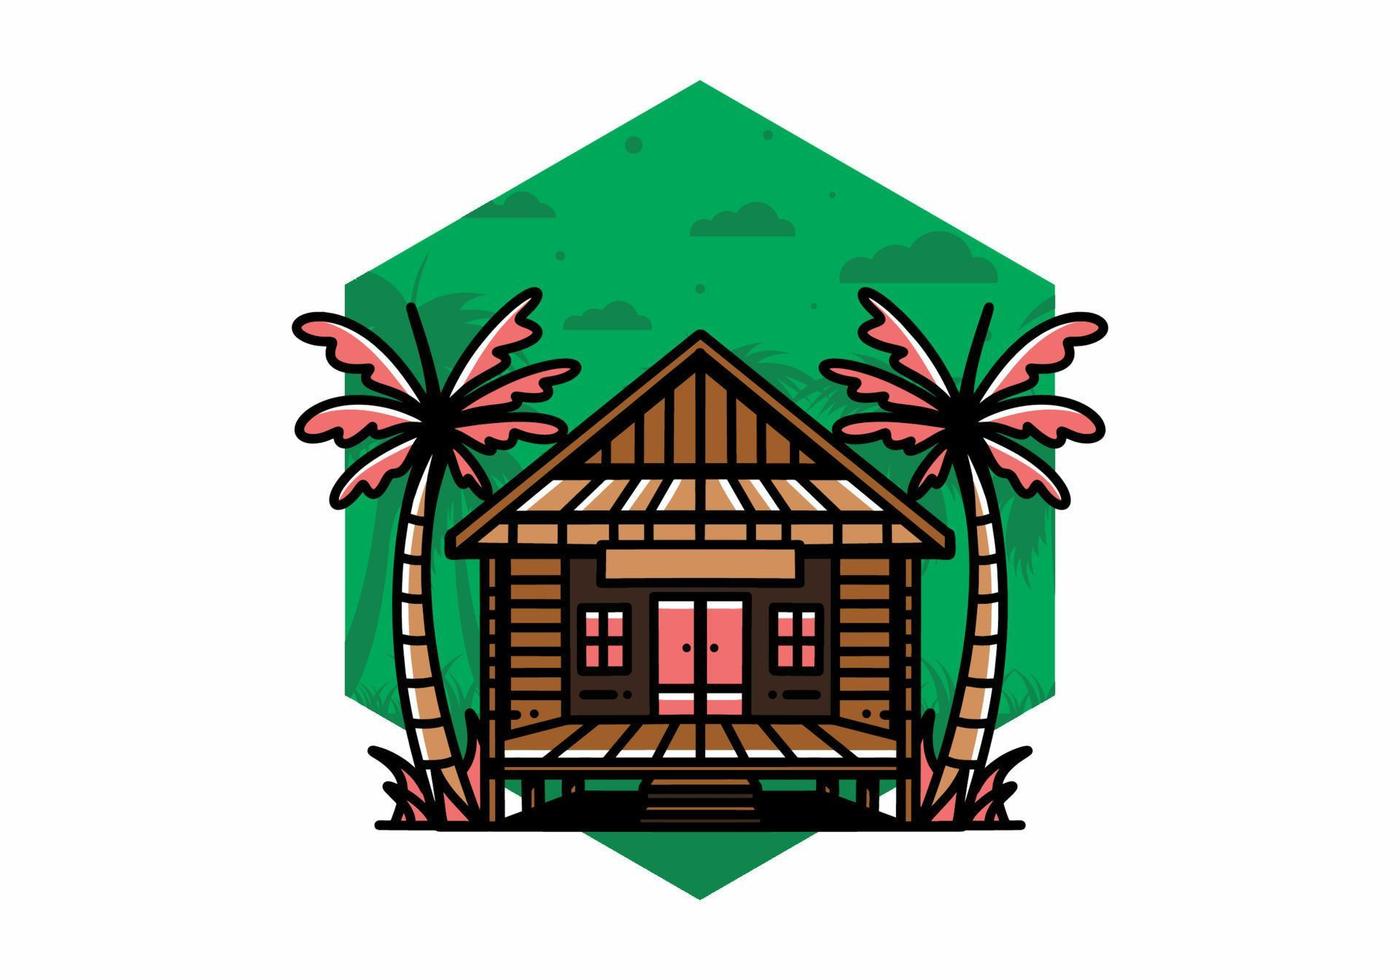 hout huis Aan de strand illustratie insigne ontwerp vector